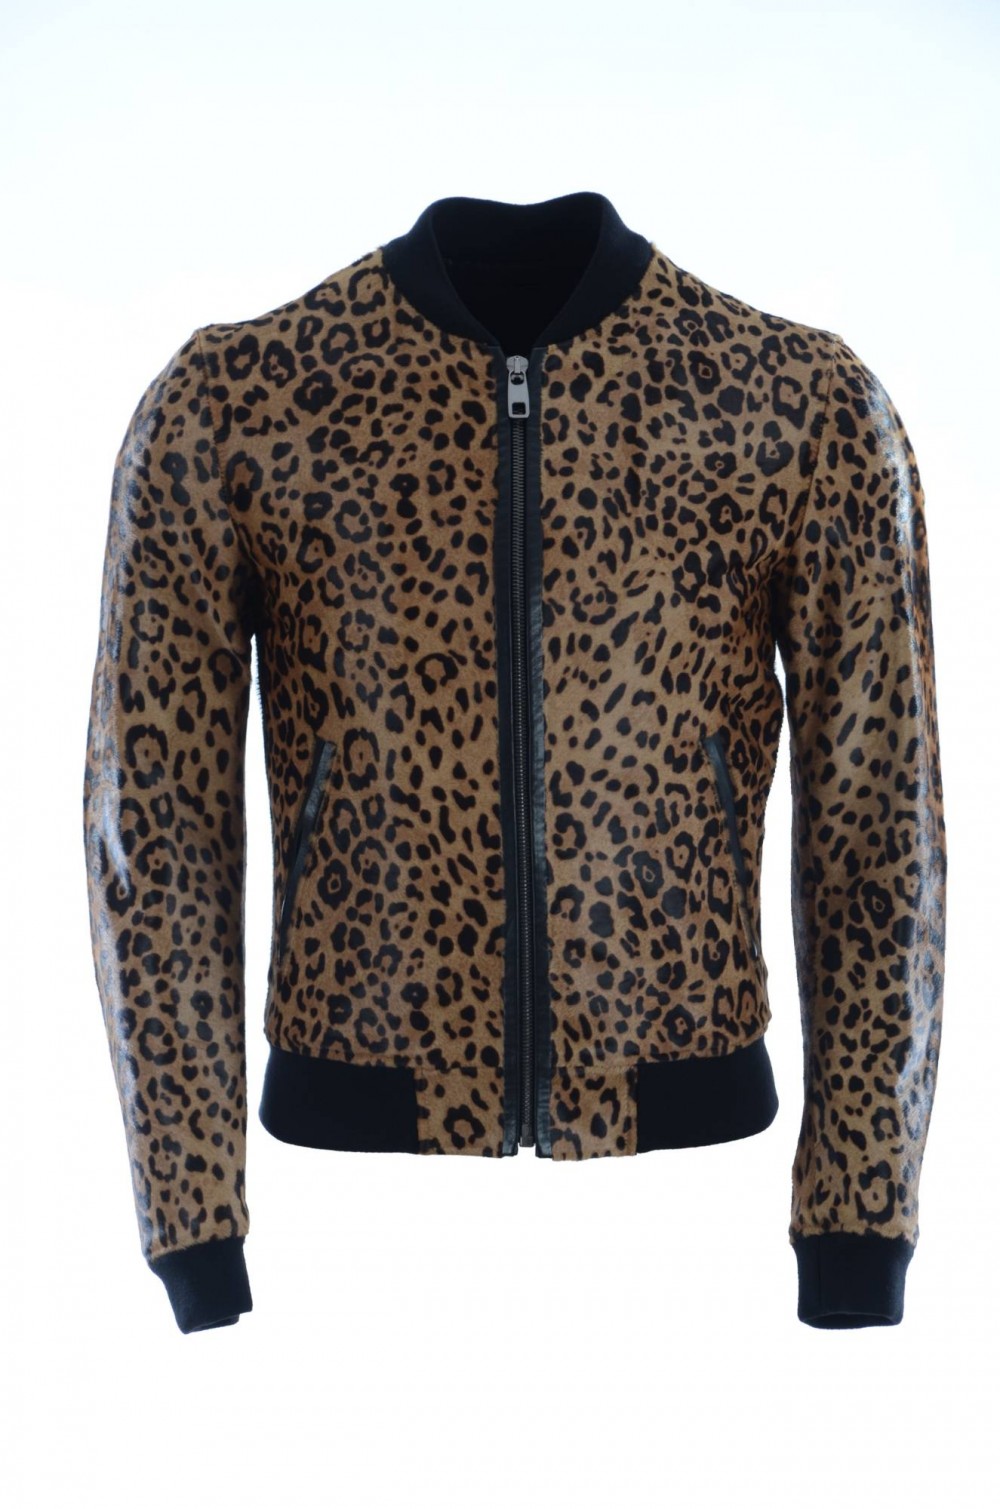 Aprender acerca 50+ imagen dolce and gabbana leopard print jacket ...